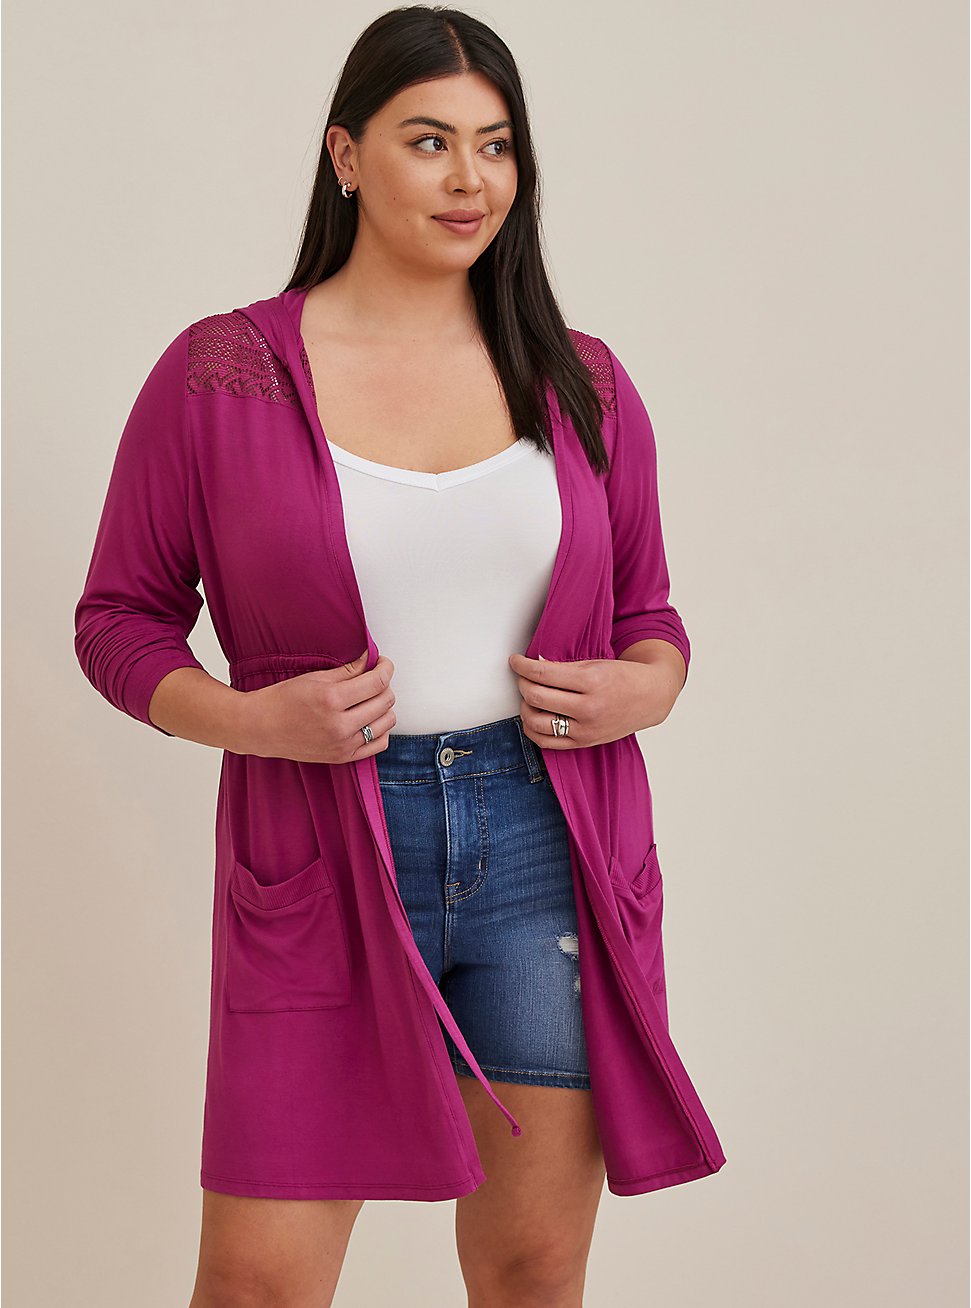 Plus Size Anorak Lace Cardigan - Super Soft Purple , PURPLE, hi-res